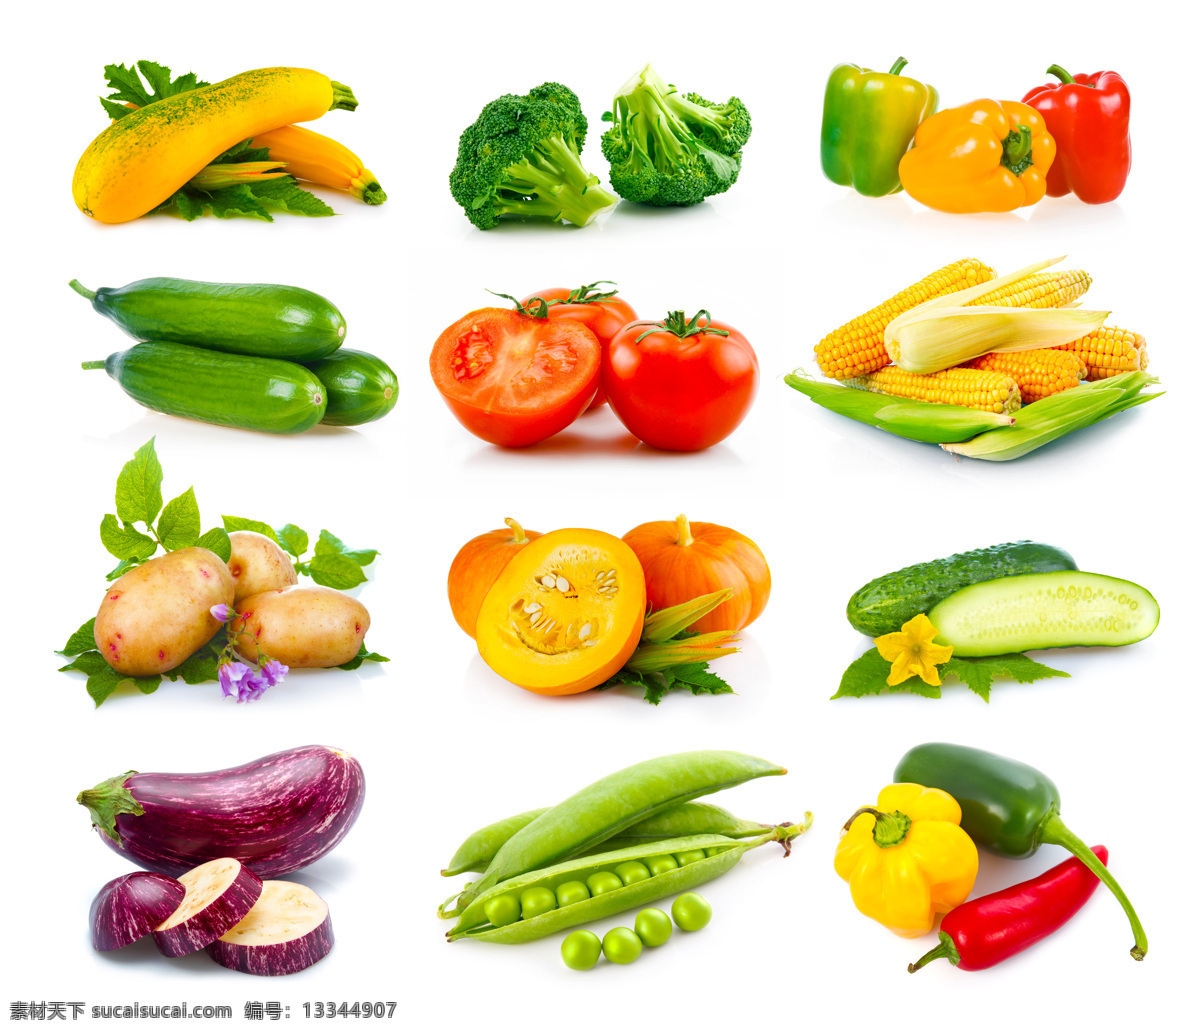 各种各样 蔬菜 青菜 西红柿 南瓜 玉米 新鲜蔬菜 果实 水果蔬菜 餐饮美食 蔬菜图片